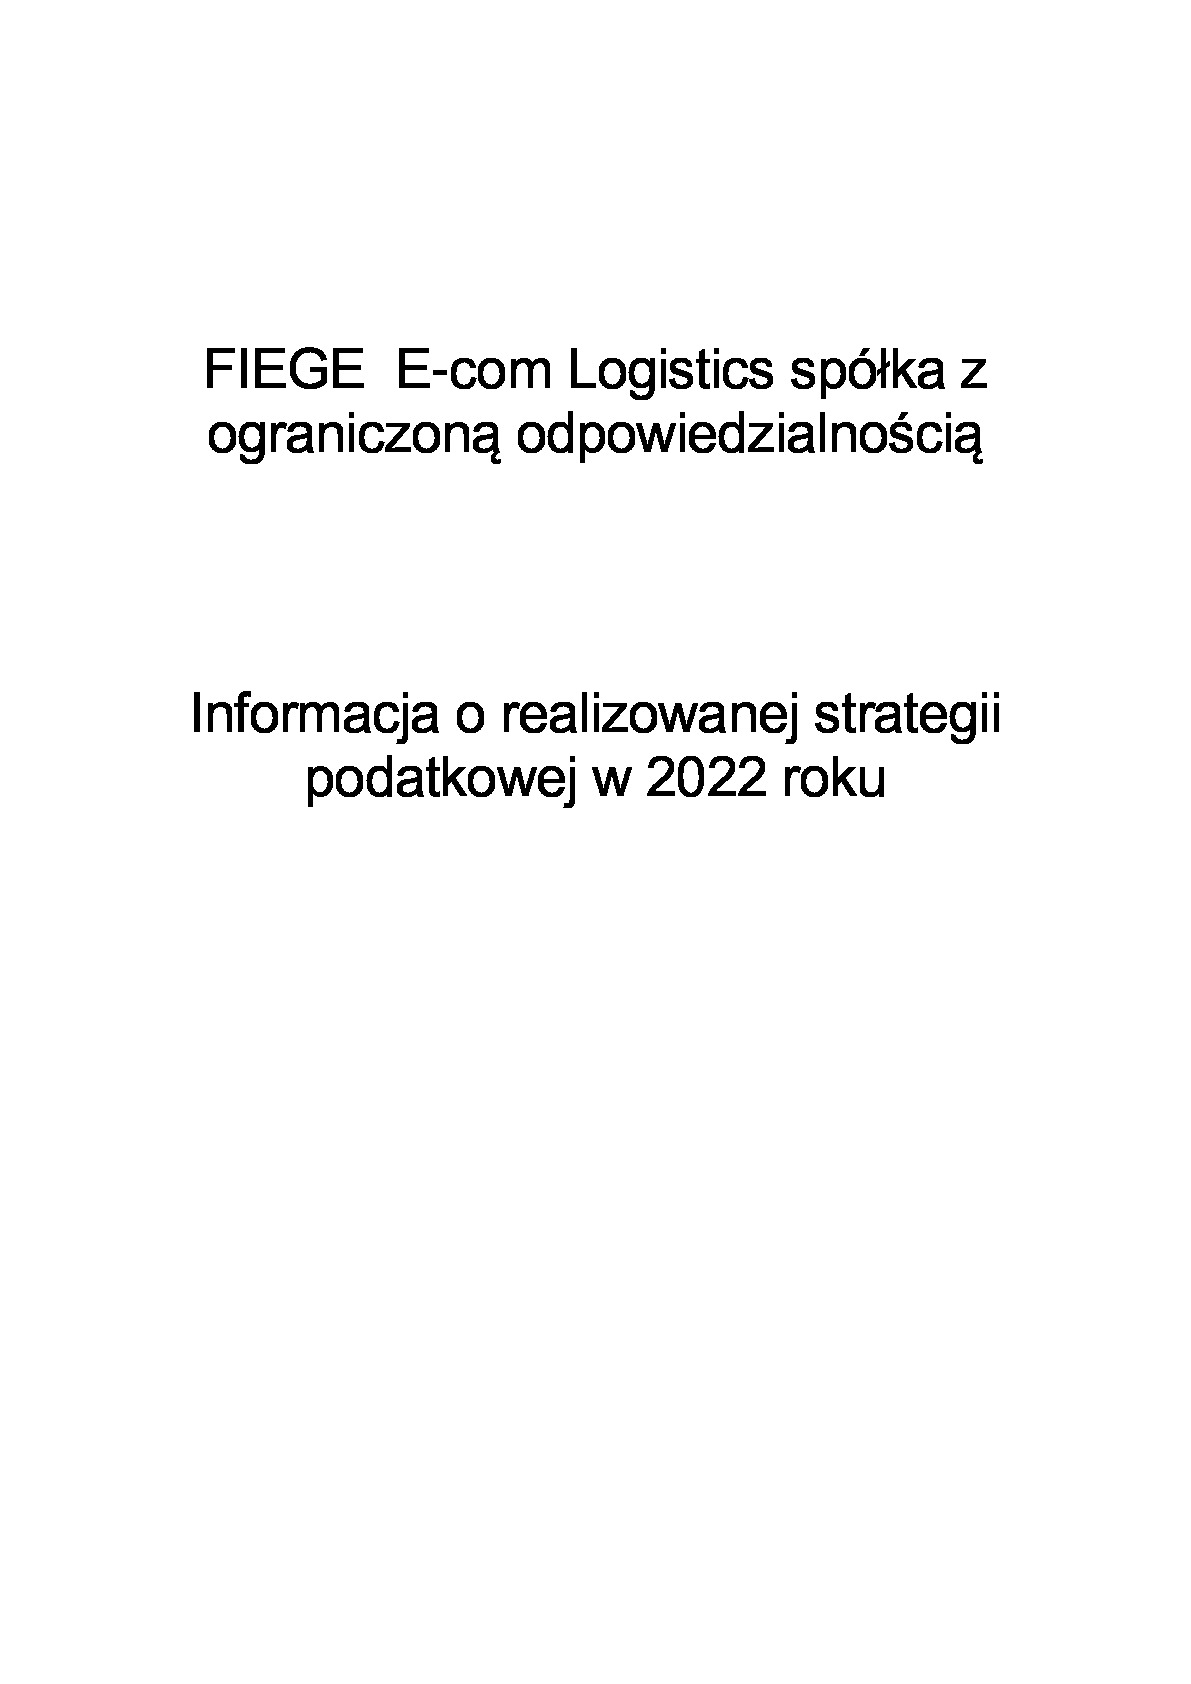 informacja-o-strategii_fiege-e-com-logistics_2022.pdf